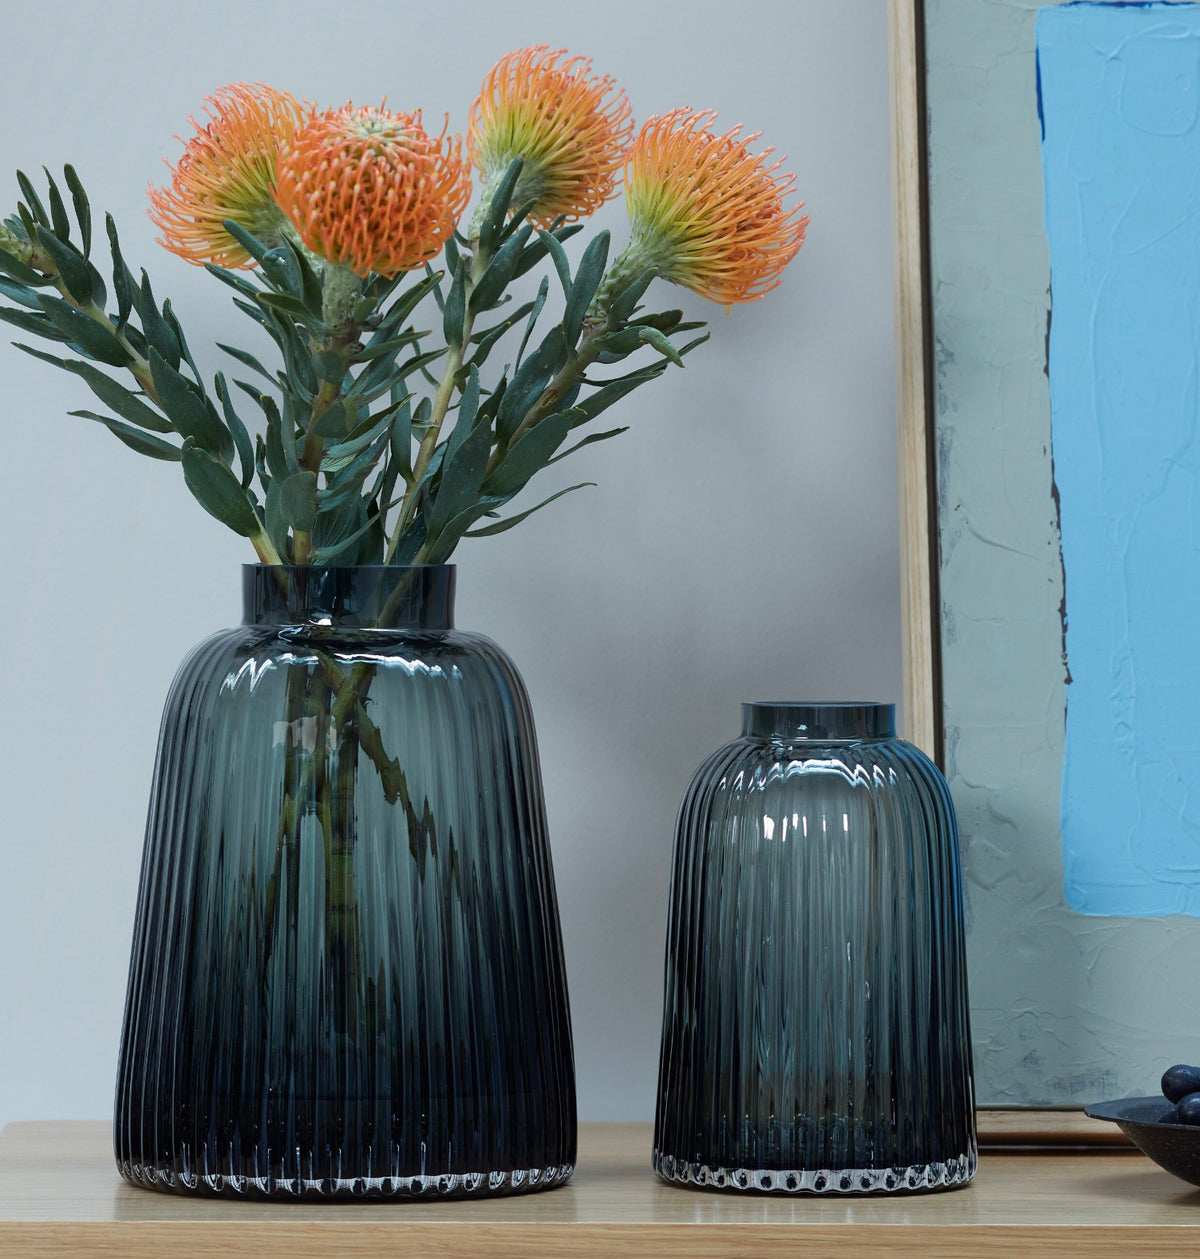 LSA - Pleat Vase Grey 20cm